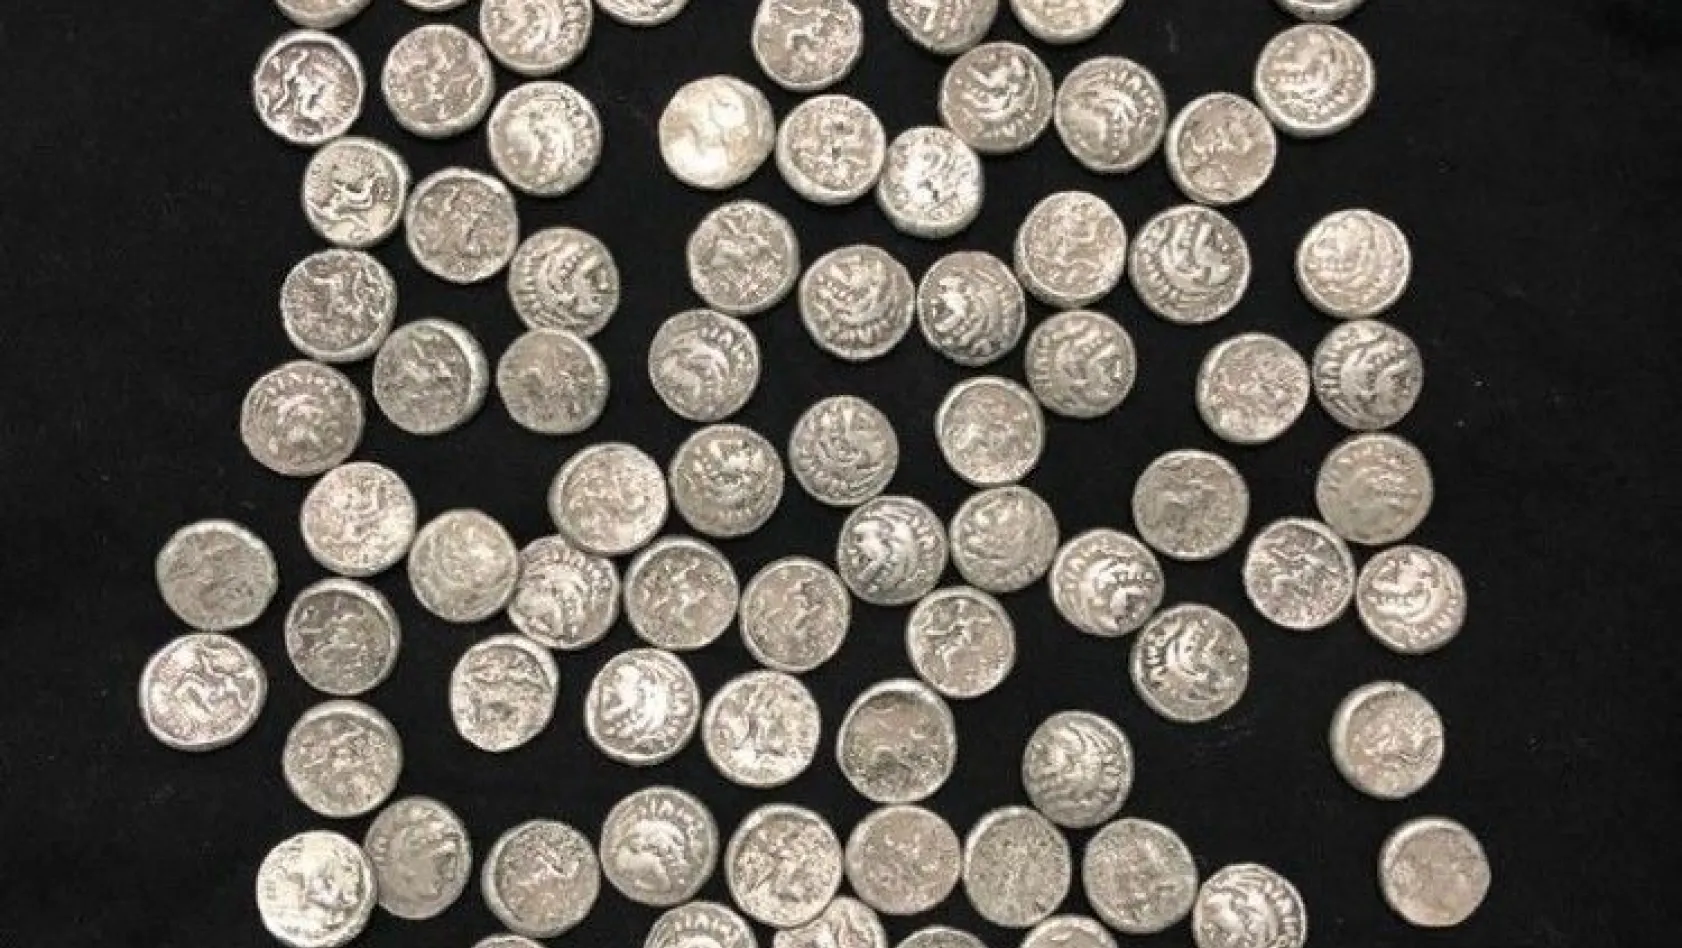 Helenistik döneme ait gümüş sikkeler ele geçirildi: 1 gözaltı
